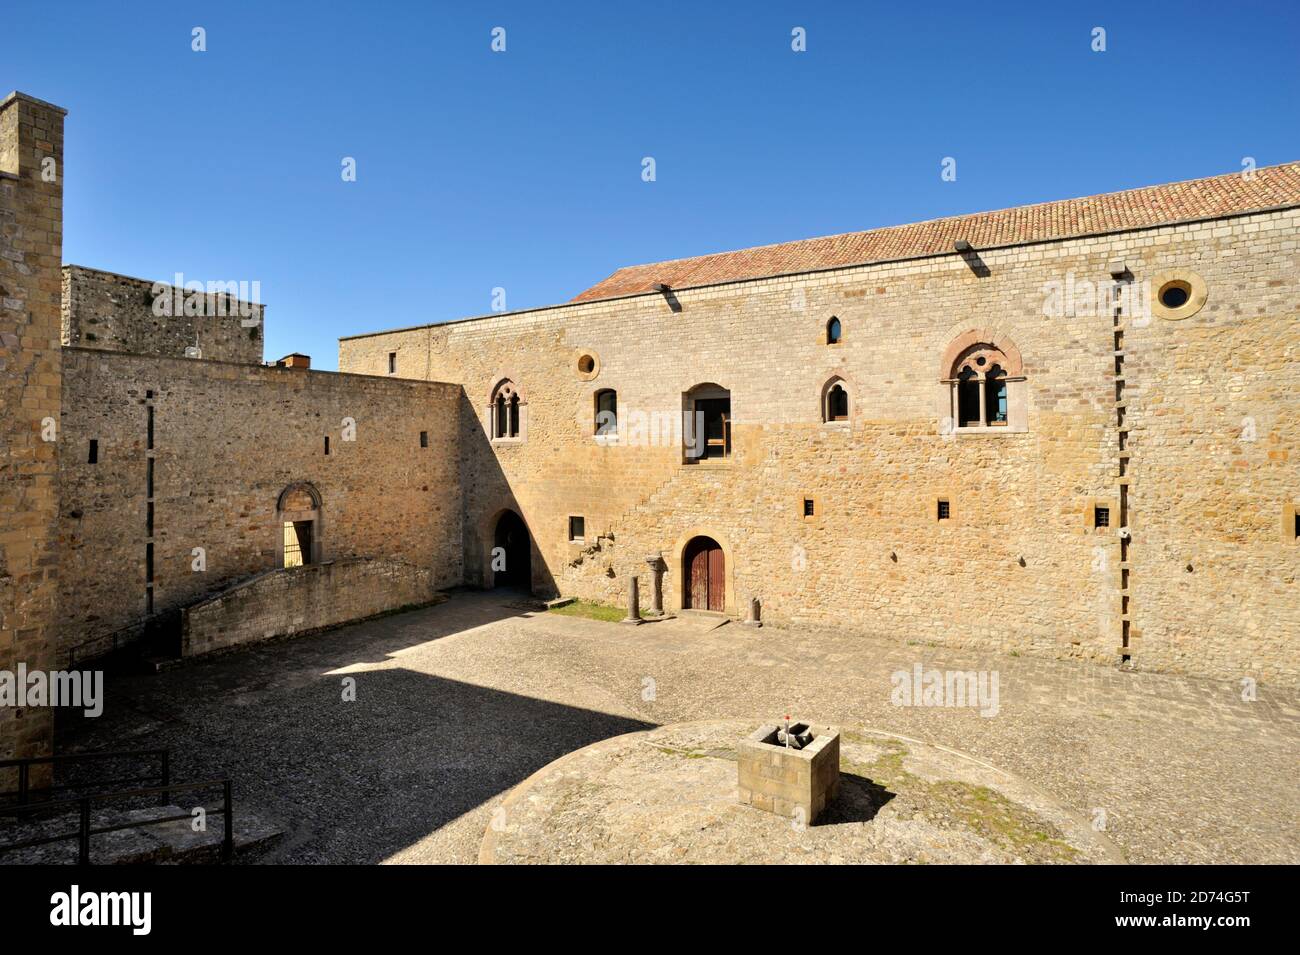 cortile del castello normanno, castel lagopesole, basilicata, italia Foto Stock